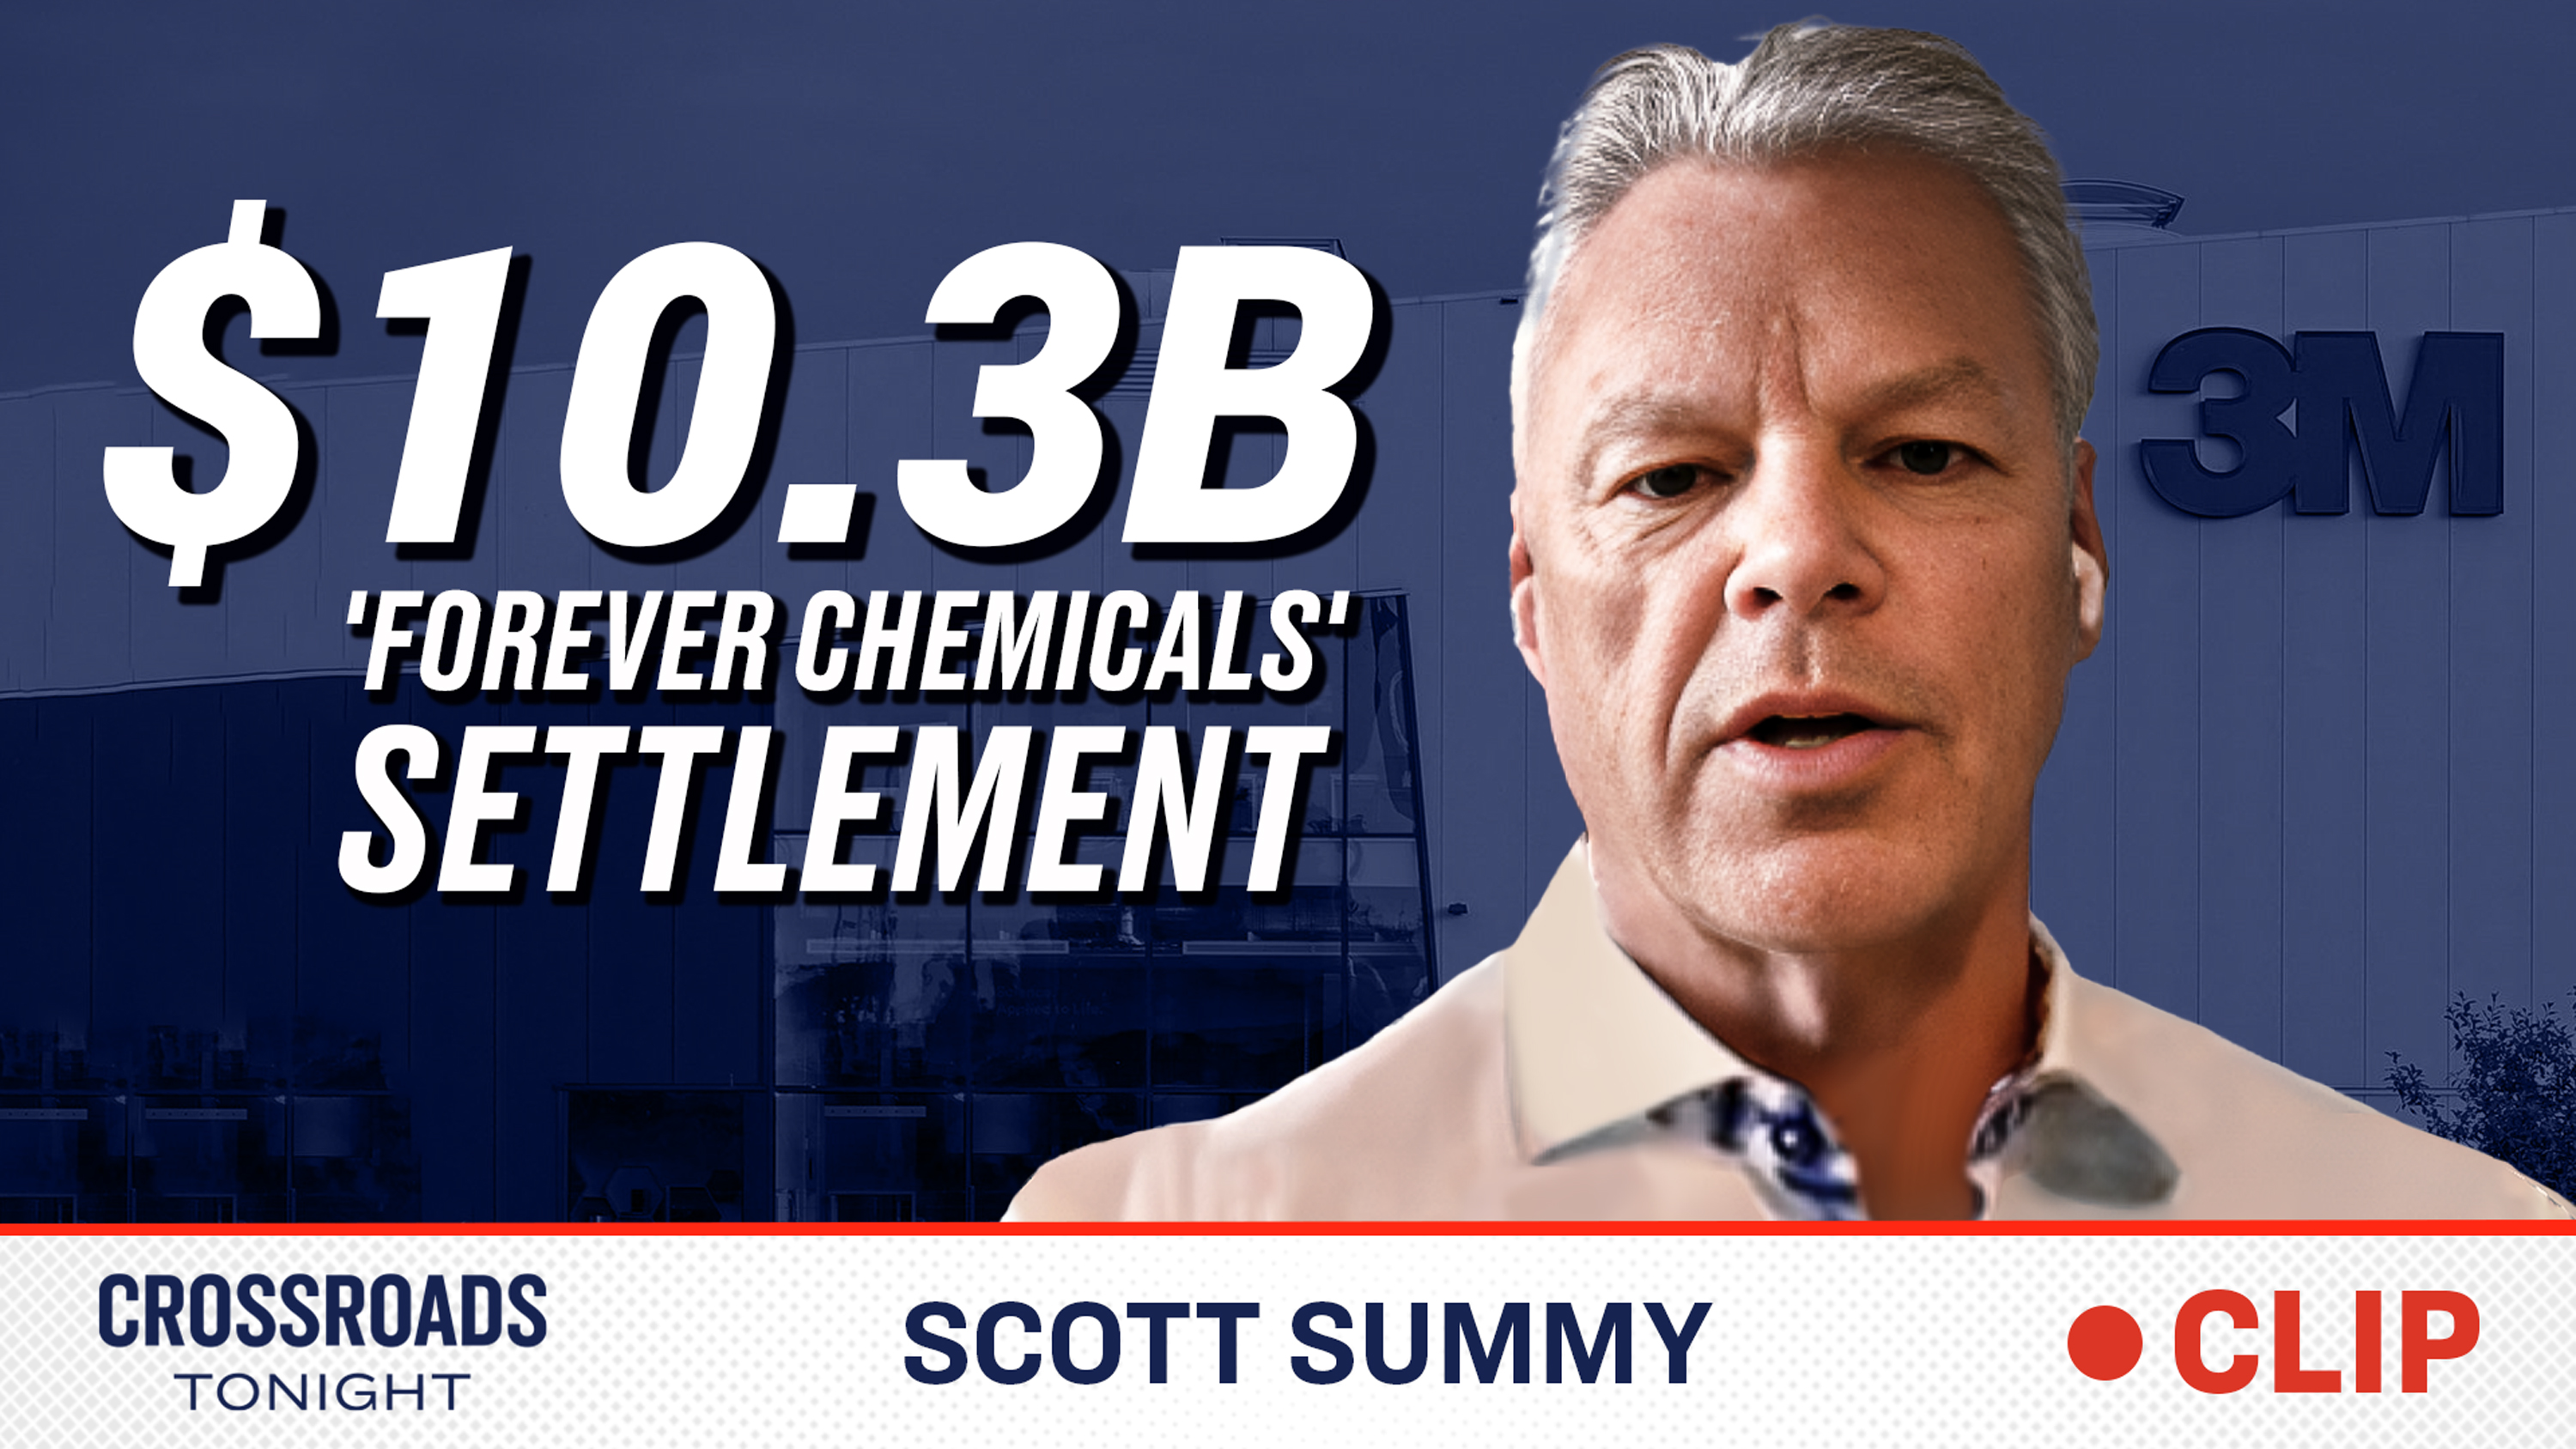 3M 'forever chemicals' settlement moves forward